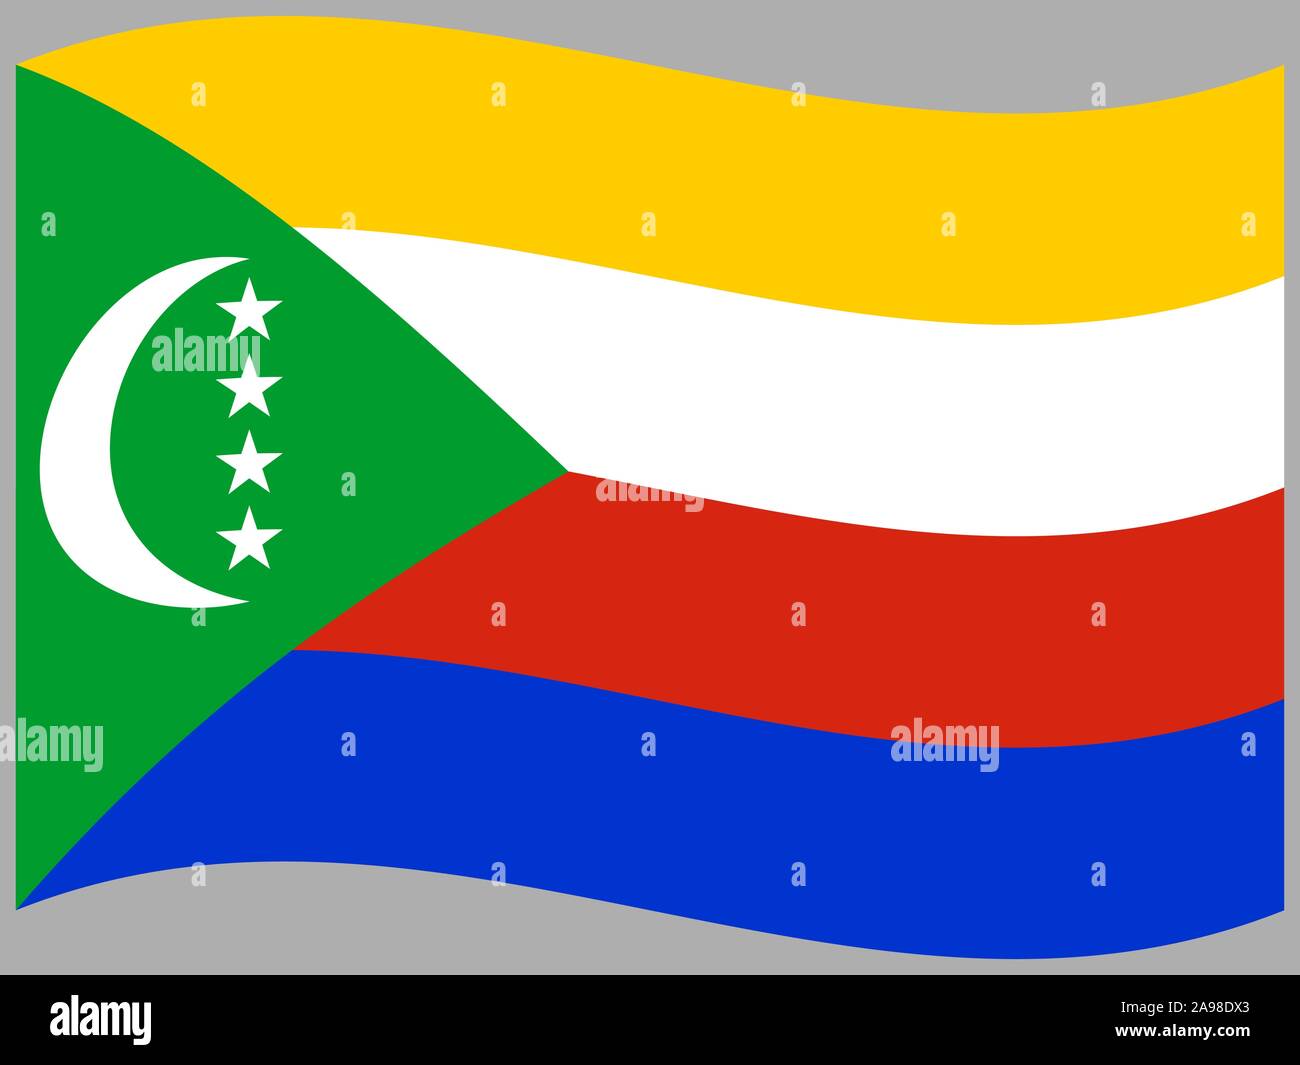 Drapeau national de Comores . couleurs d'origine et de proportion. Illustration vectorielle, simplement, en provenance de pays. Illustration de Vecteur